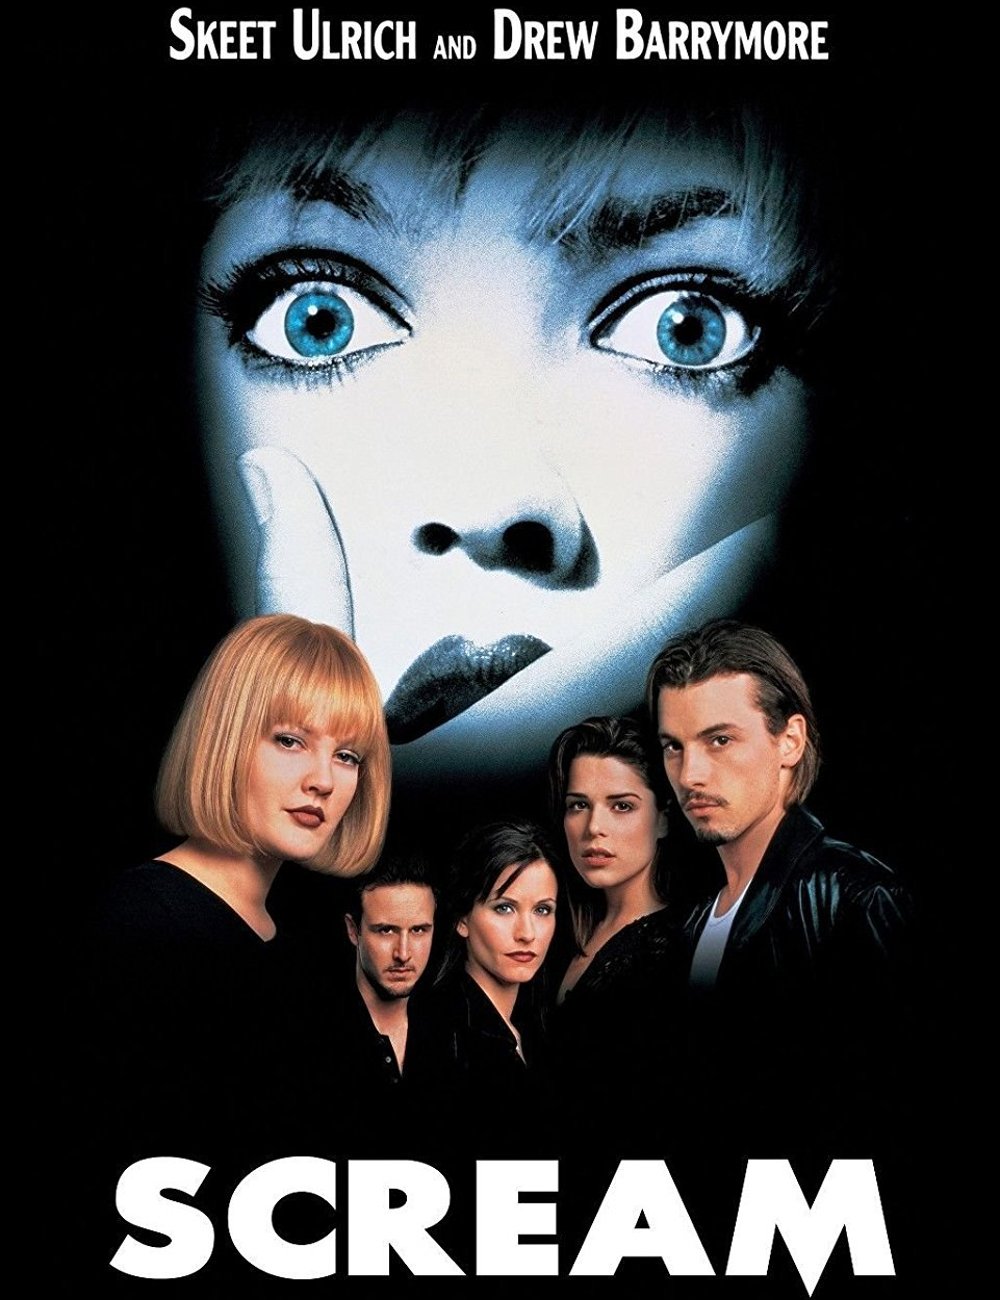 Scream (1996) - filme - melhores filmes de terror - dica - halloween - https://stealthelook.com.br